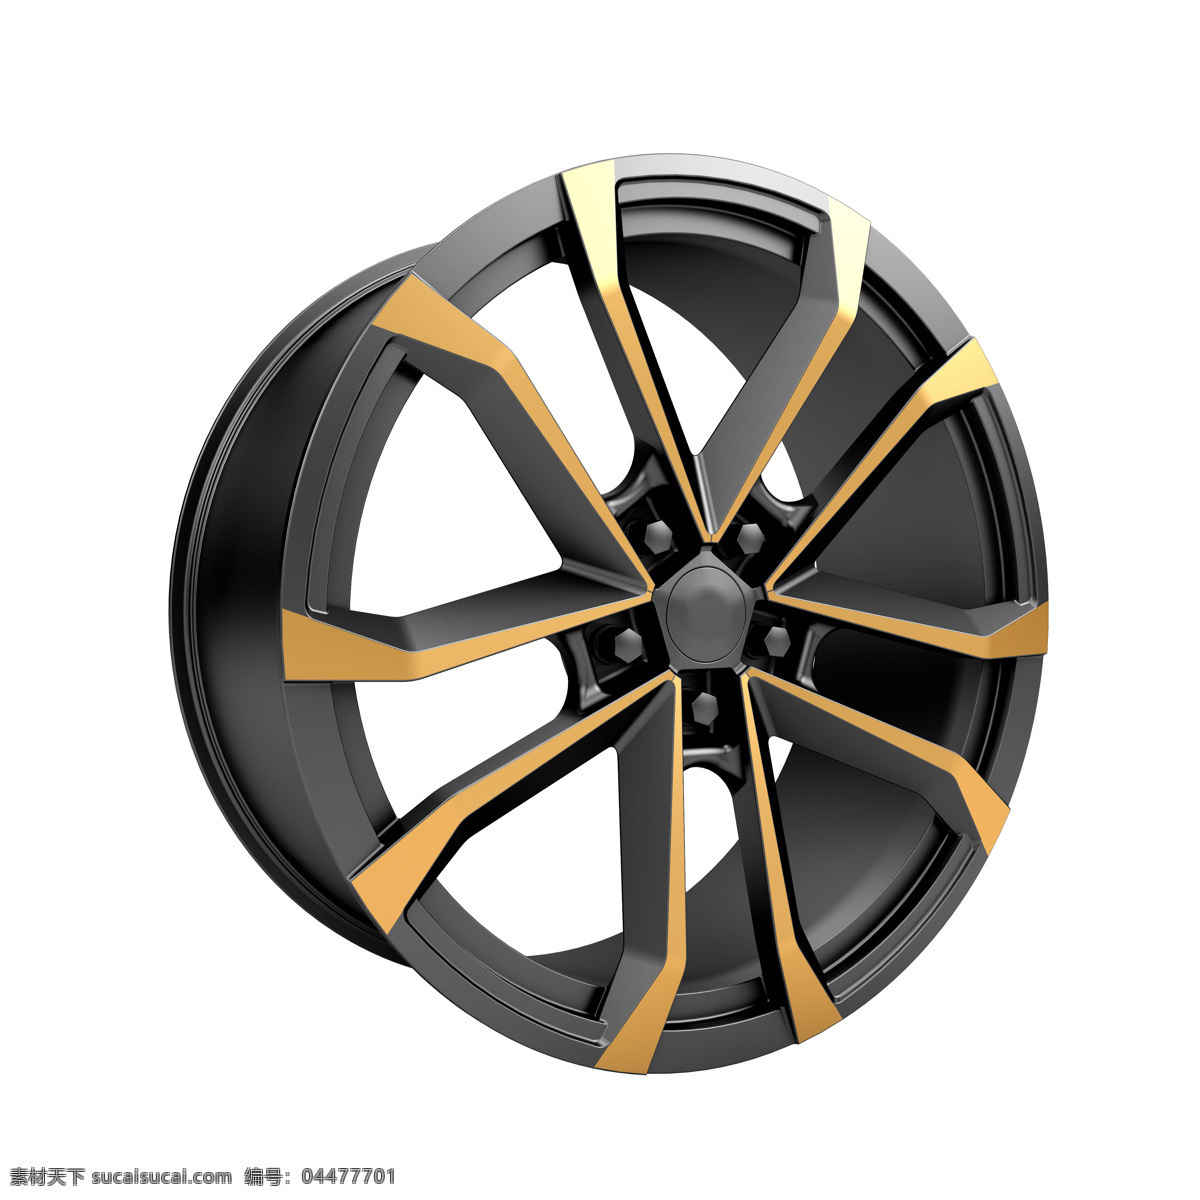 金色轮毂 轮毂 车轮 轿车轮毂 汽车轮毂 汽车零件 轿车配件 汽配 轮毂模型 其他类别 生活百科 白色